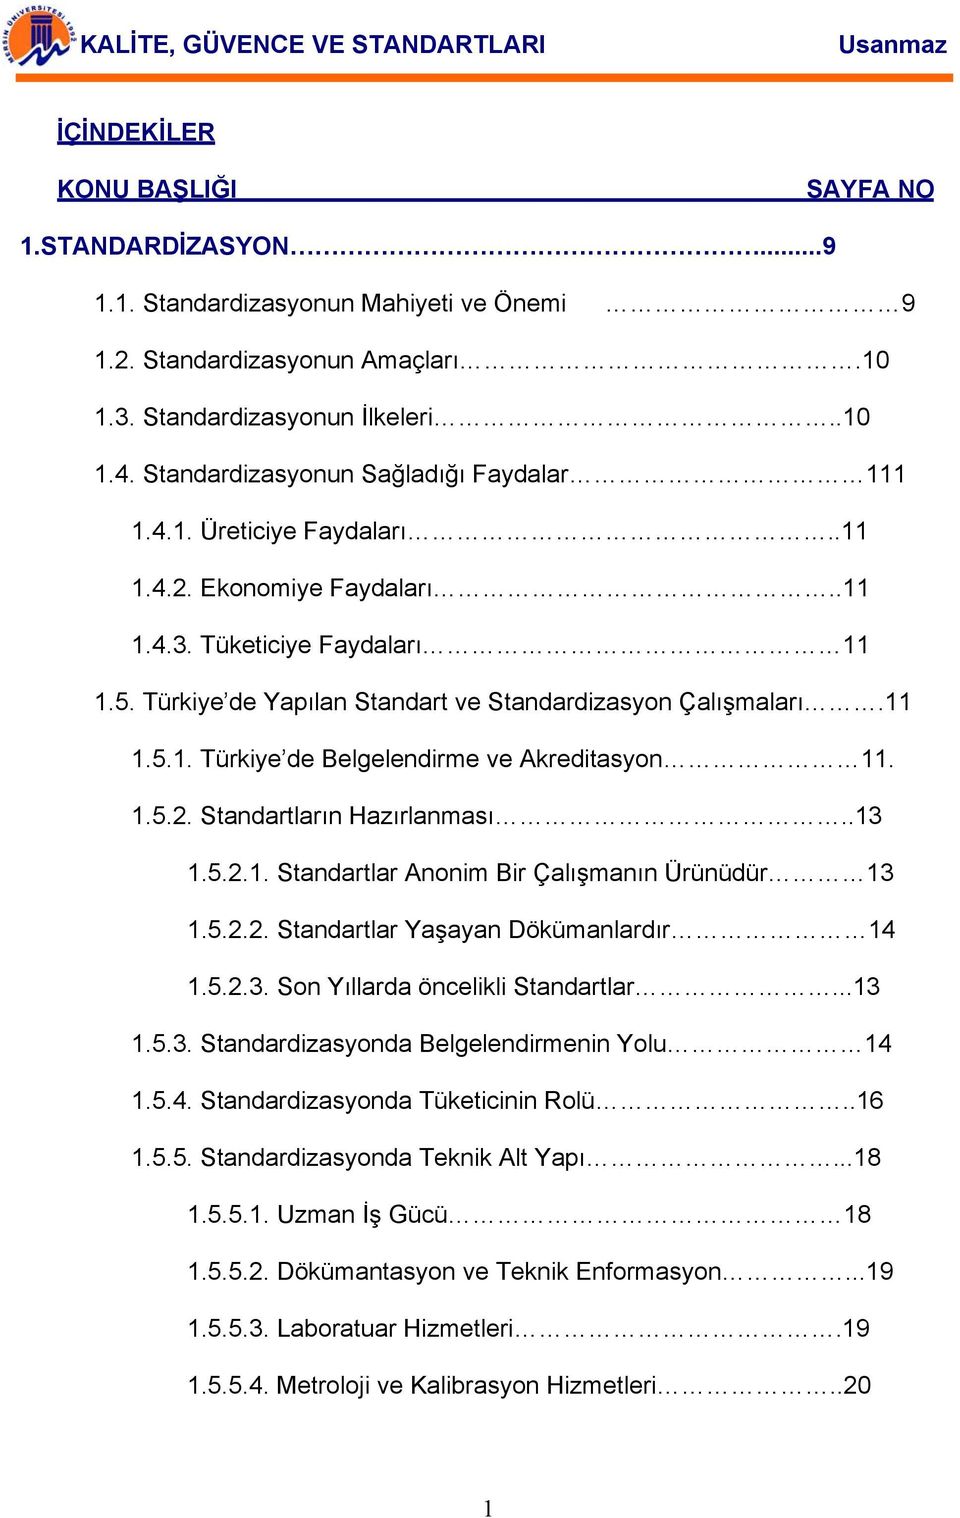 11 1.5.1. Türkiye de Belgelendirme ve Akreditasyon 11. 1.5.2. Standartların Hazırlanması..13 1.5.2.1. Standartlar Anonim Bir Çalışmanın Ürünüdür 13 1.5.2.2. Standartlar Yaşayan Dökümanlardır 14 1.5.2.3. Son Yıllarda öncelikli Standartlar.